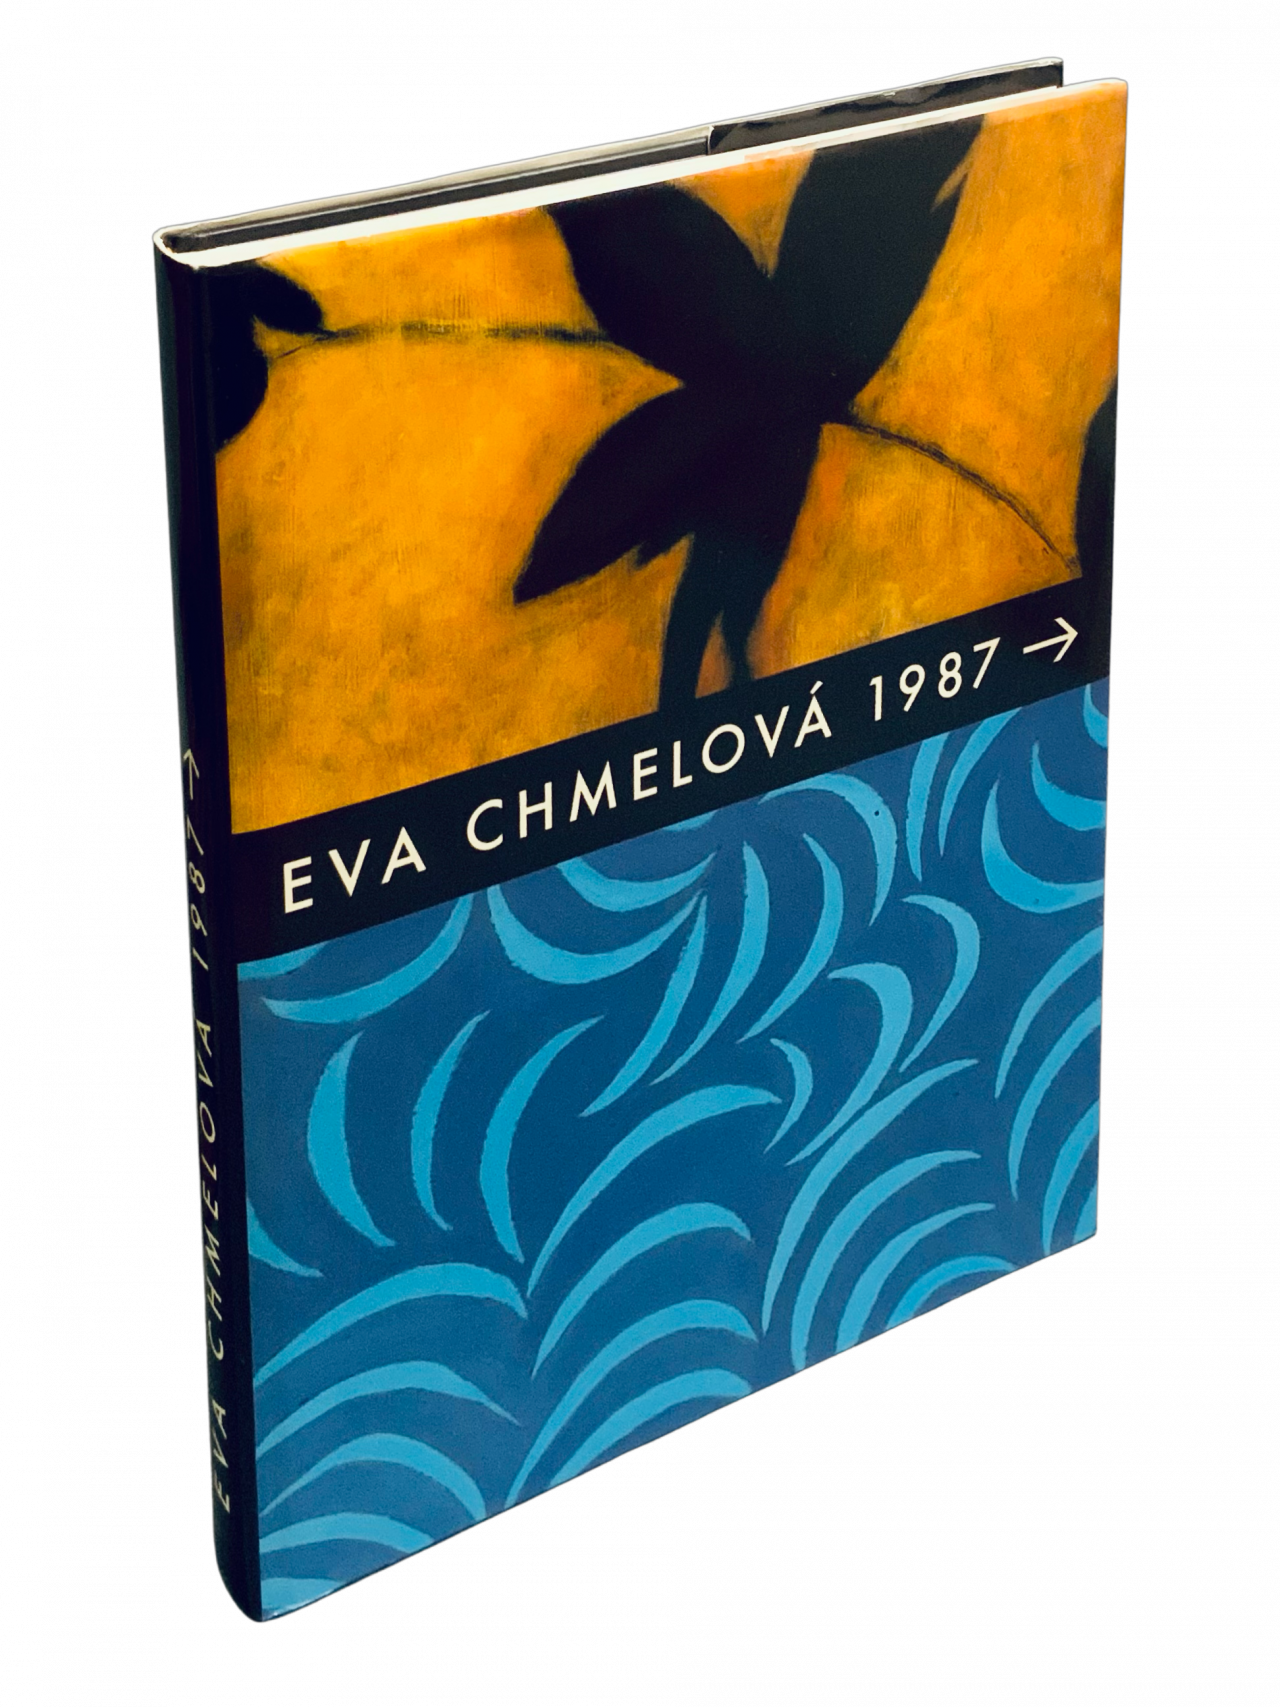 Eva Chmelová 1987 a dál 19791870 63E5 4C3C BC53 081CCC2086C3